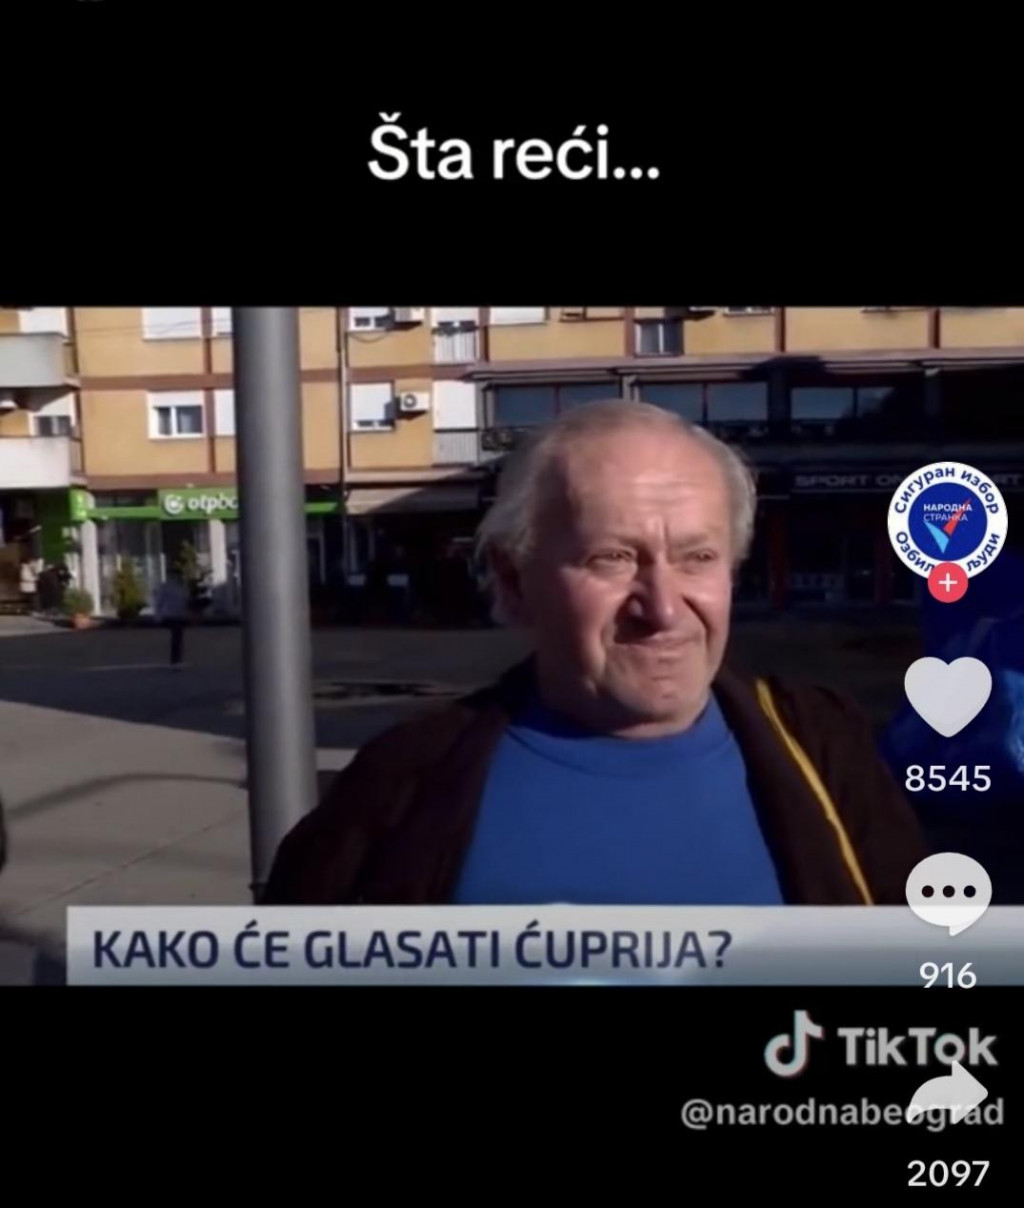 &lt;p&gt;Starac iz Ćuprije unatoč mizernoj mirovini svoj glas daje Vučiću&lt;/p&gt;